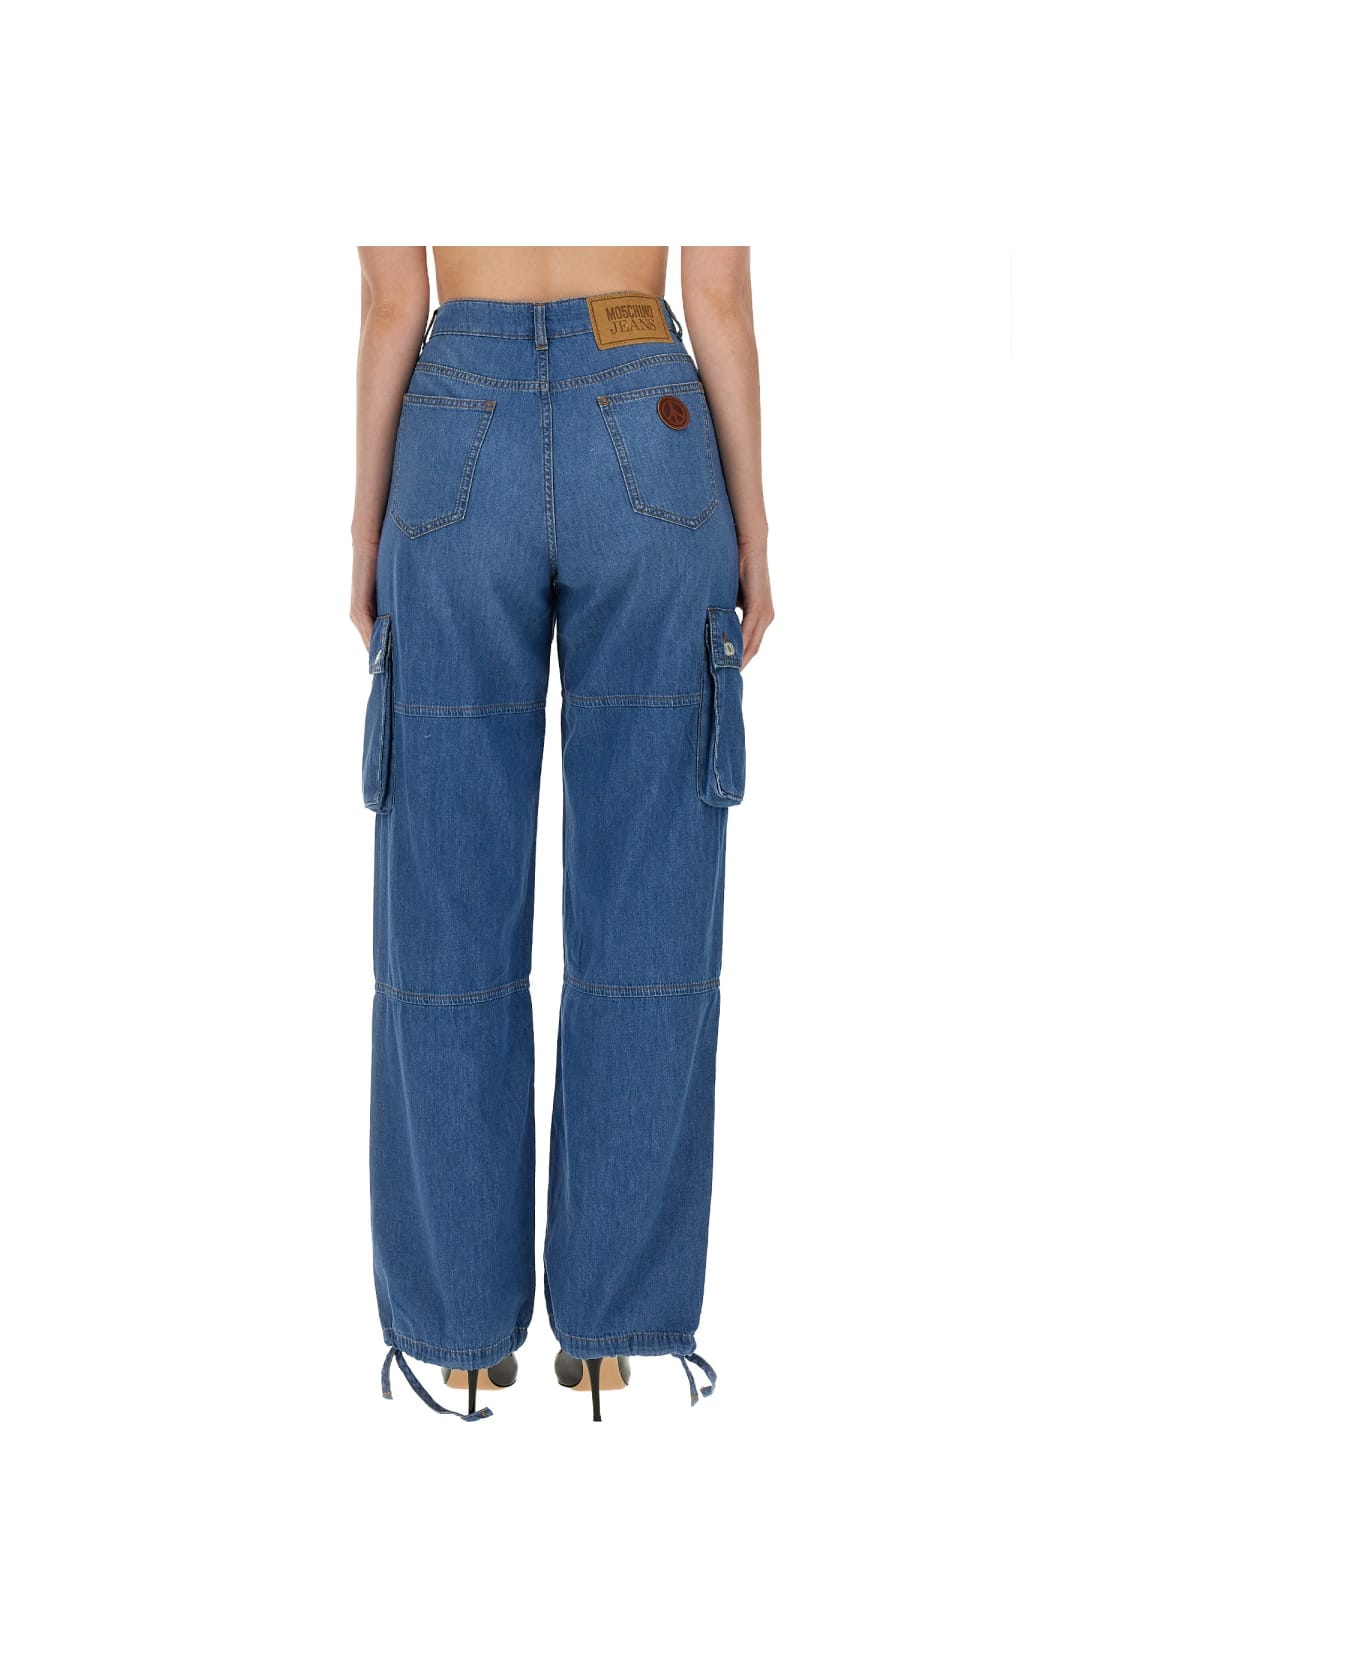 M05CH1N0 Jeans Cargo Pants - BLUE